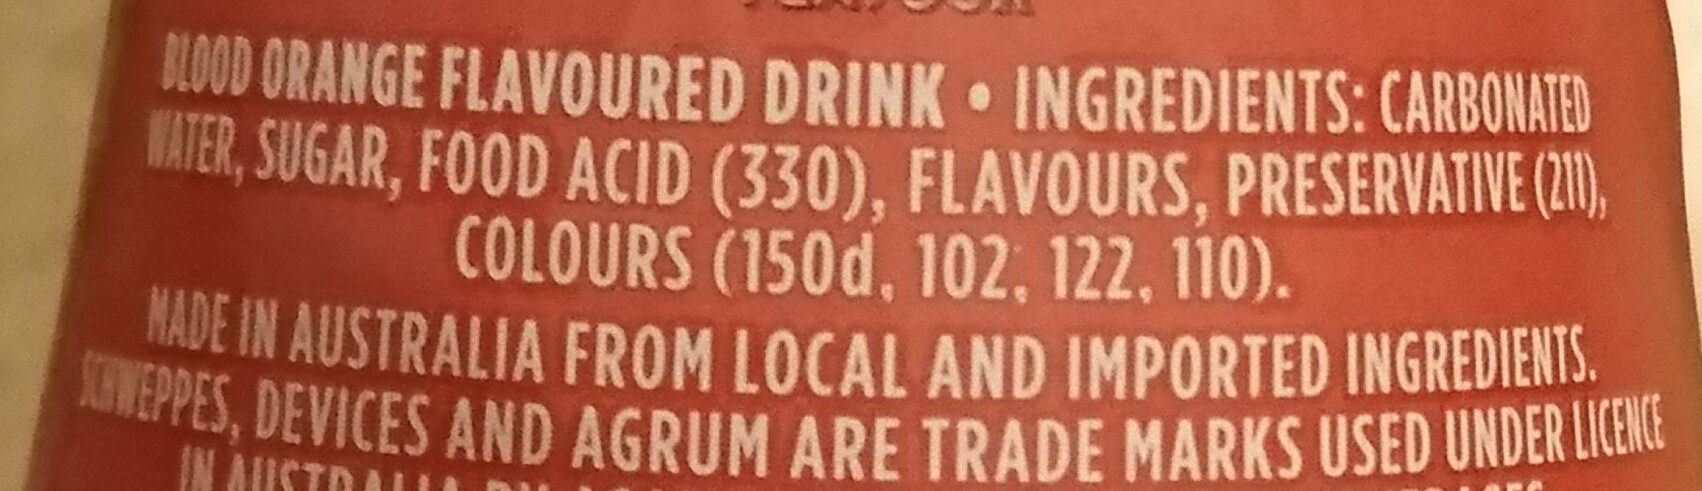 Agrum - Ingredients